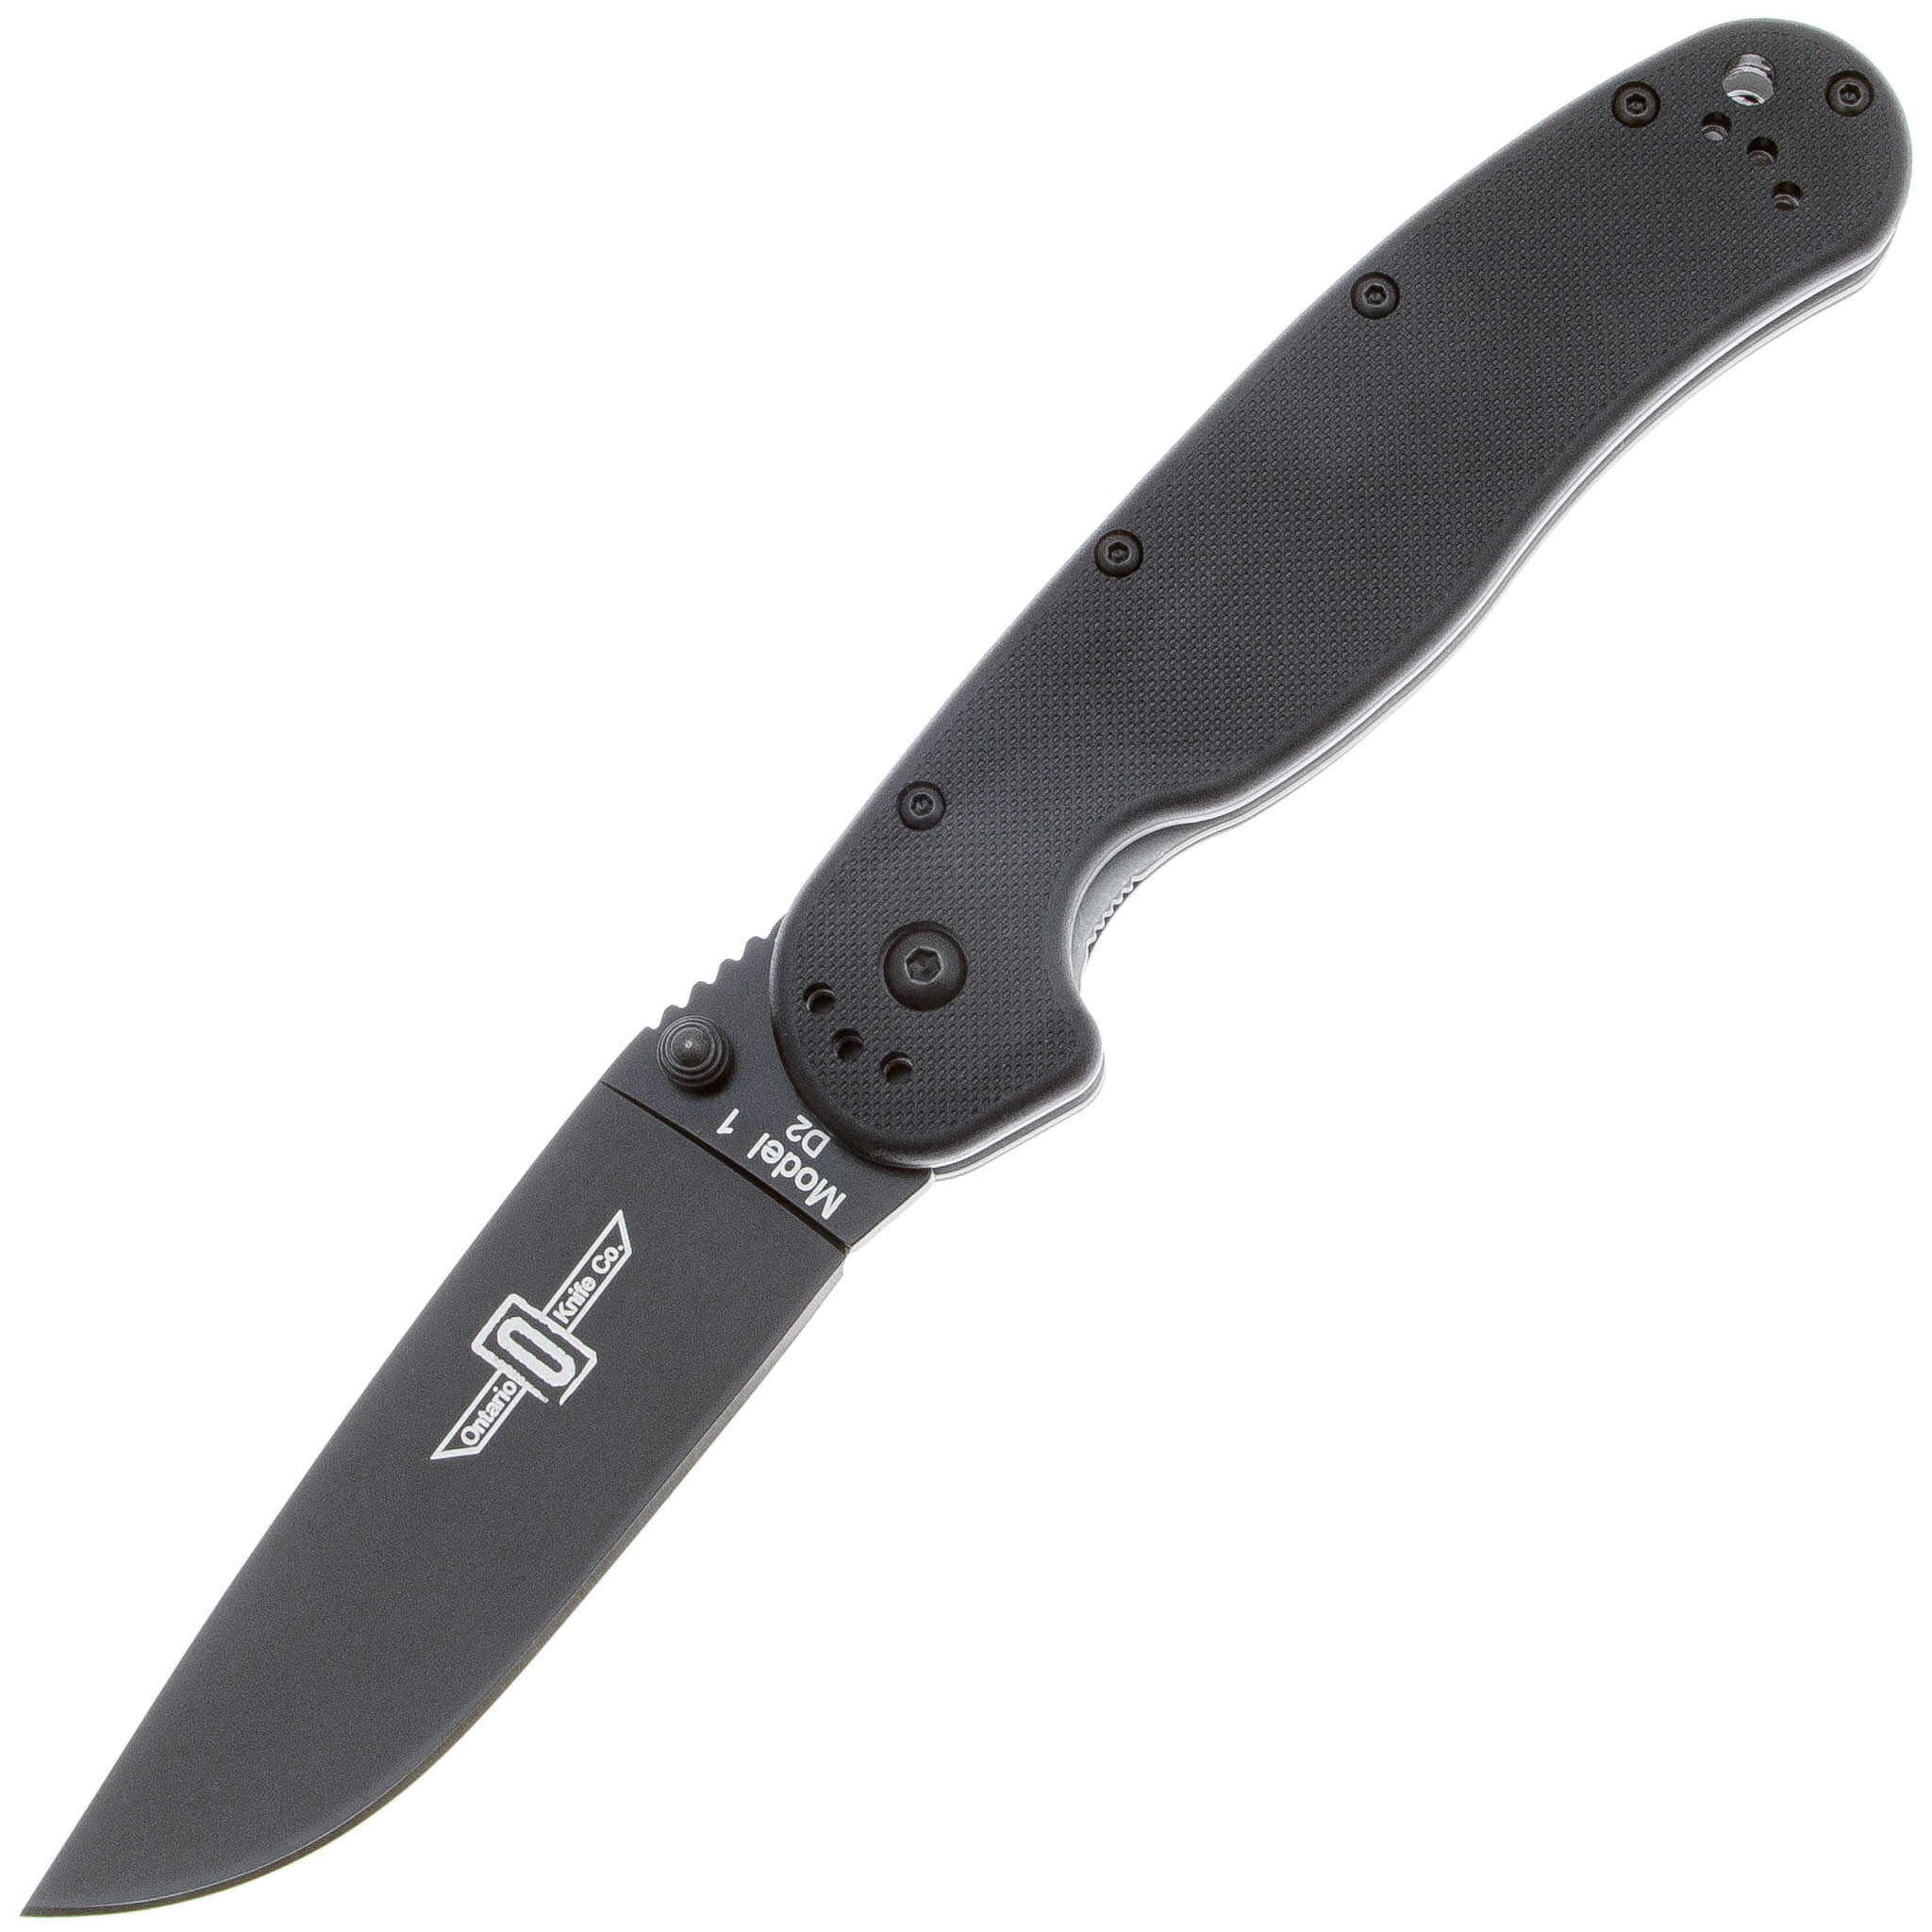 Нож складной Ontario RAT-1, сталь D2, рукоять термопластик GRN, black складной нож ontario joe pardue utilitac ii black tanto blade highly textured handle